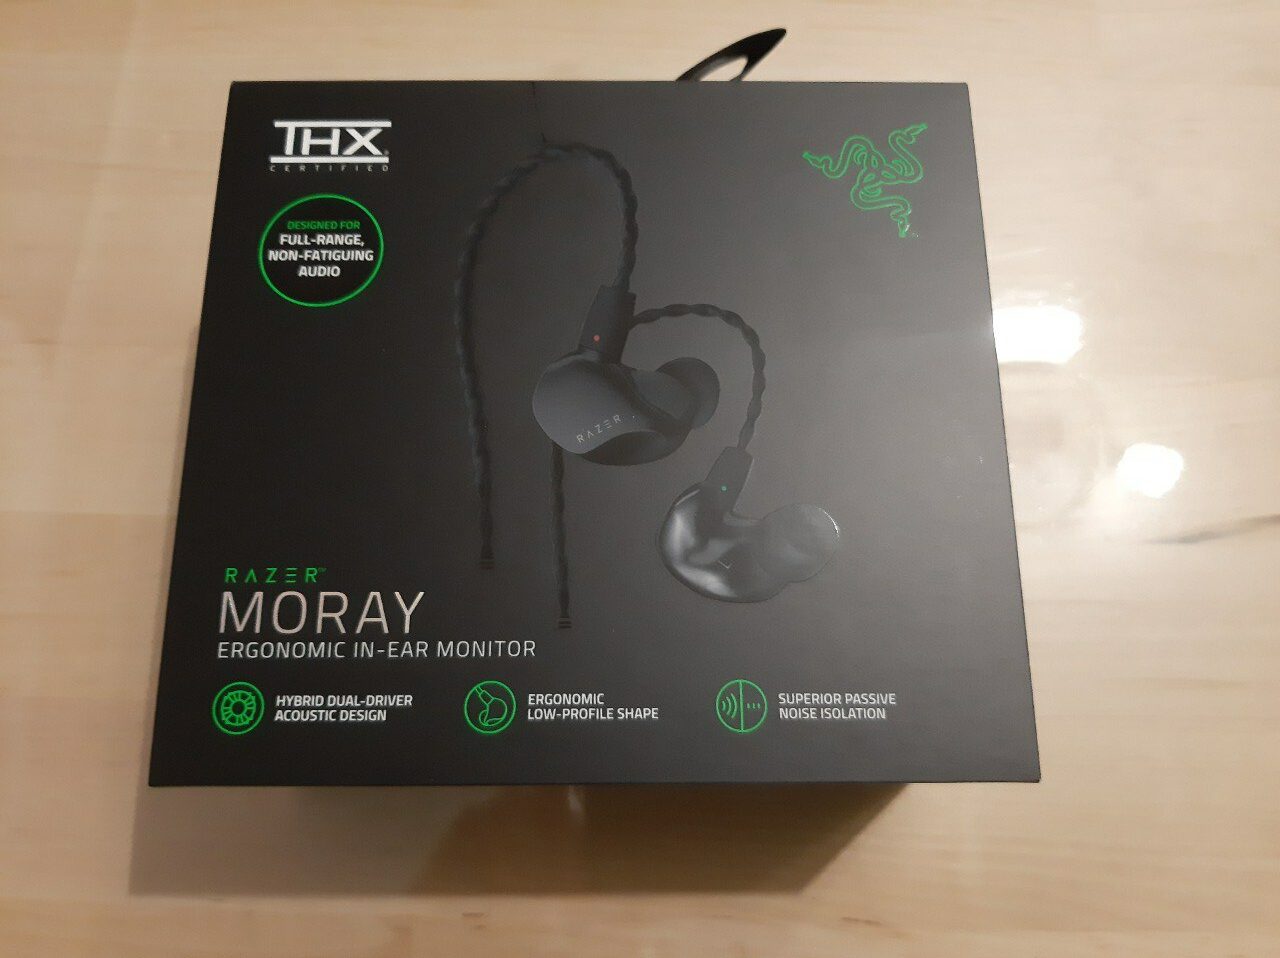 Analizamos los auriculares Razer Moray - Audio de calidad y confort para streaming